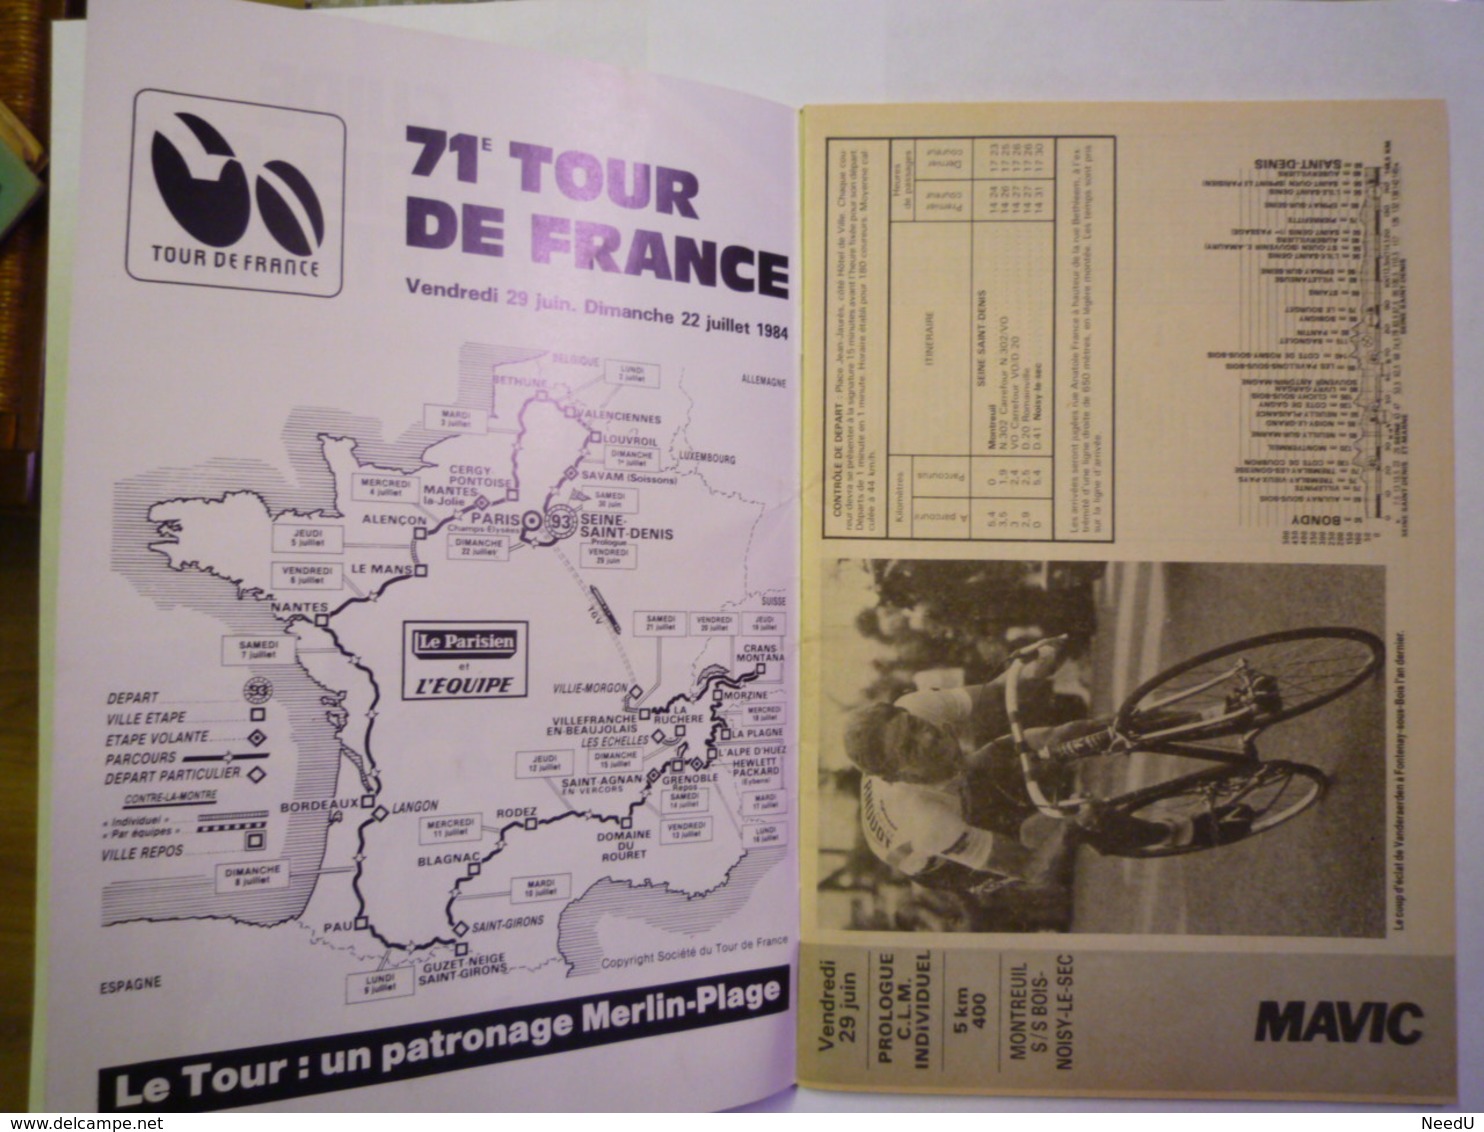 GP 2019 - 1667  TOUR De FRANCE 1984  :  Guide Officiel Des 23 étapes   XXX - Cyclisme